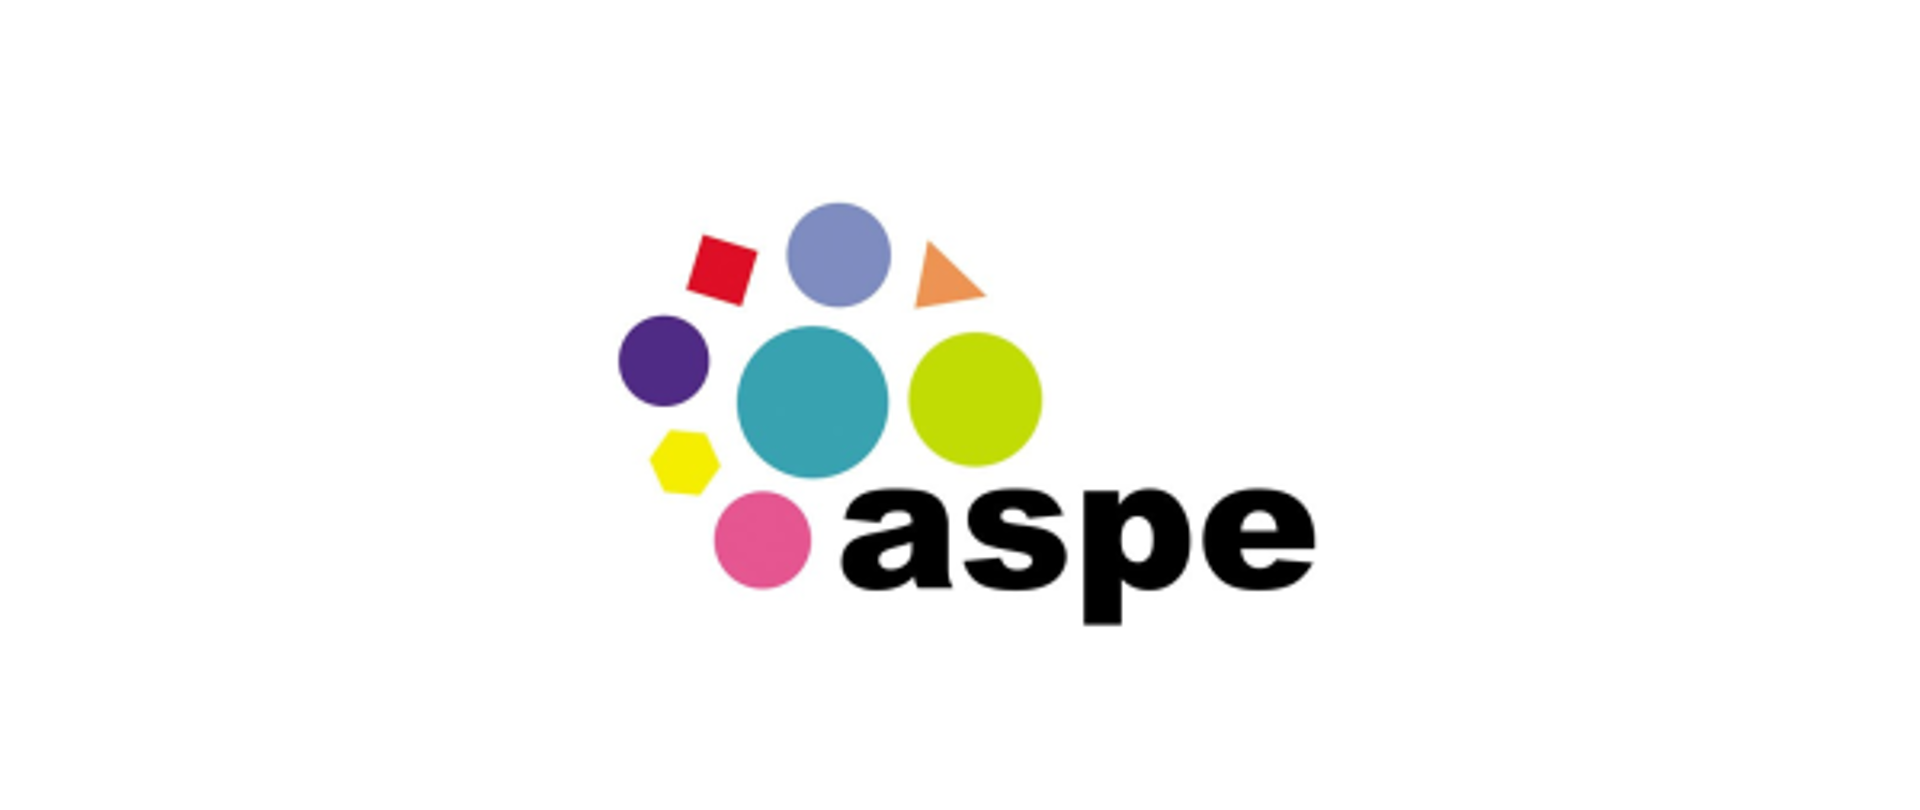 Logo aspe (asystent ucznia ze specjalnymi potrzebami edukacyjnymi) - kolorowe figury geometryczne, pod nimi napis aspe